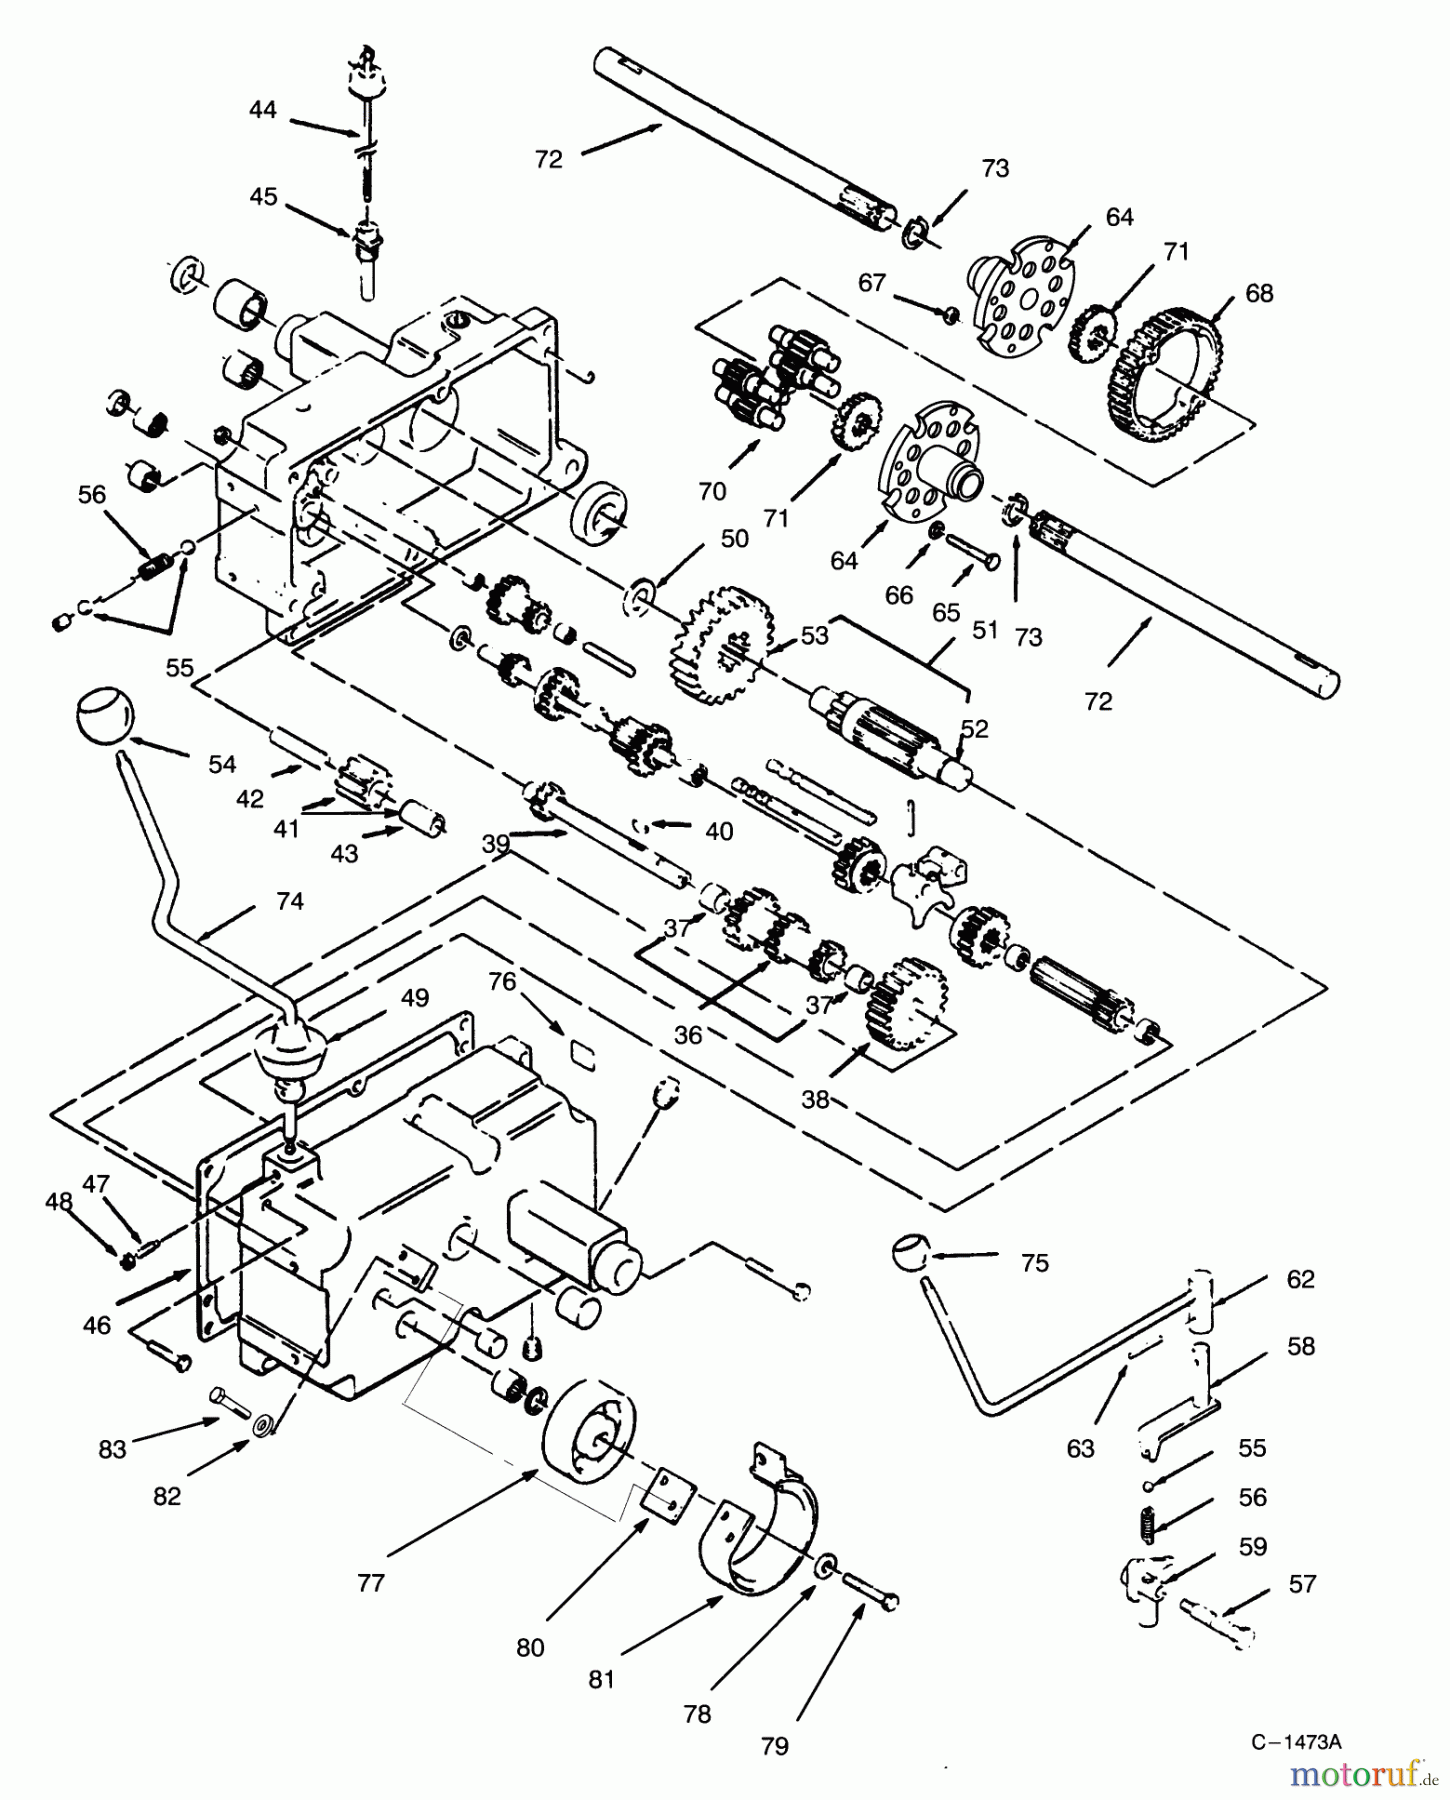  Toro Neu Mowers, Lawn & Garden Tractor Seite 1 73362 (312-8) - Toro 312-8 Garden Tractor, 1994 (4900001-4999999) TRANSMISSION 8-SPEED #2